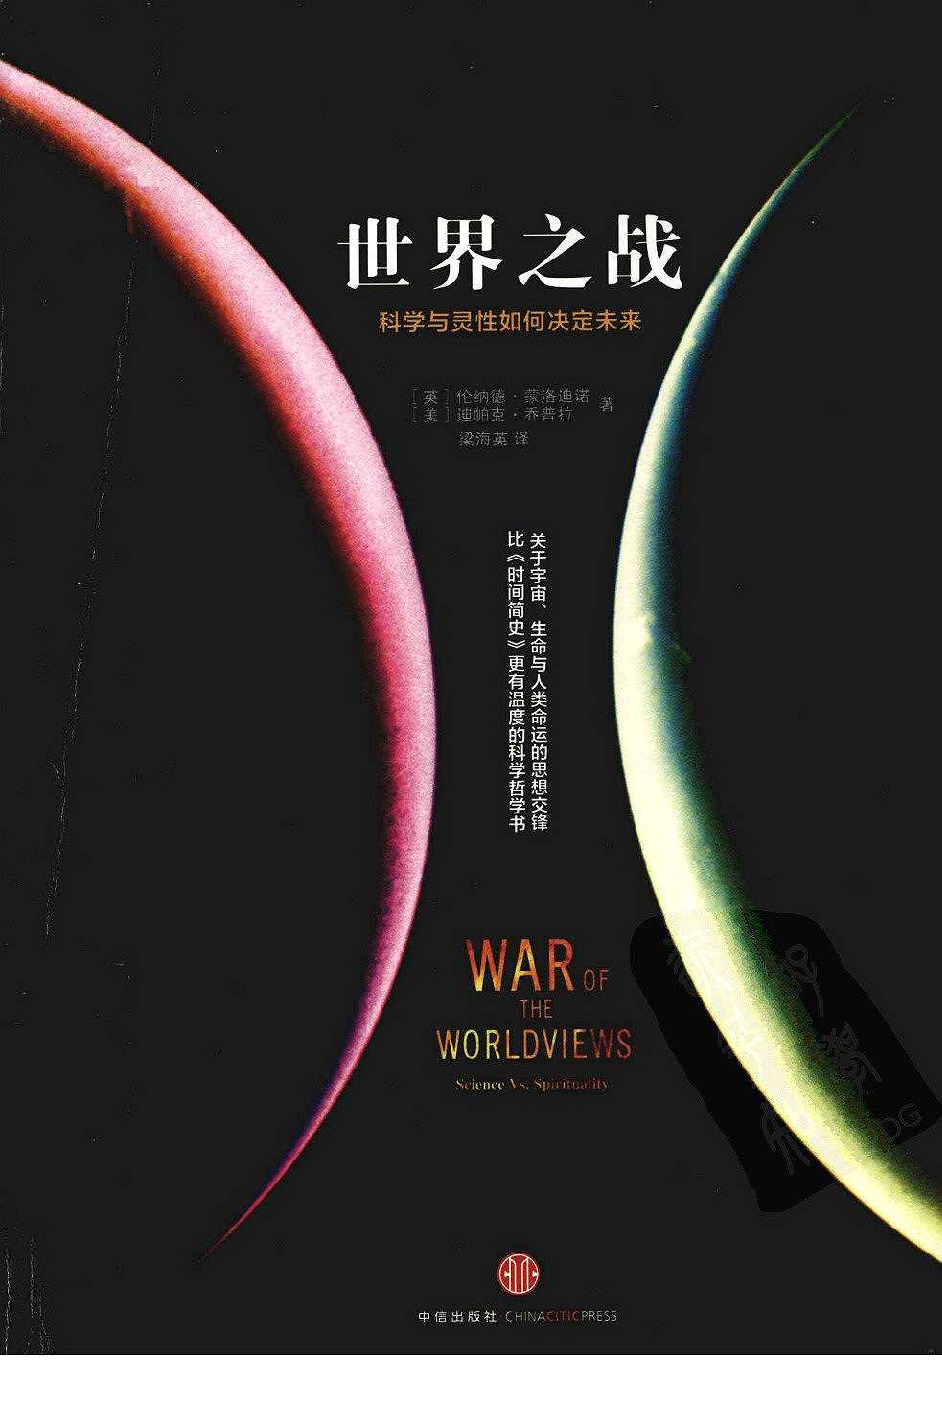 世界之战：科学与灵性如何决定未来（英）伦纳德·蒙洛迪诺